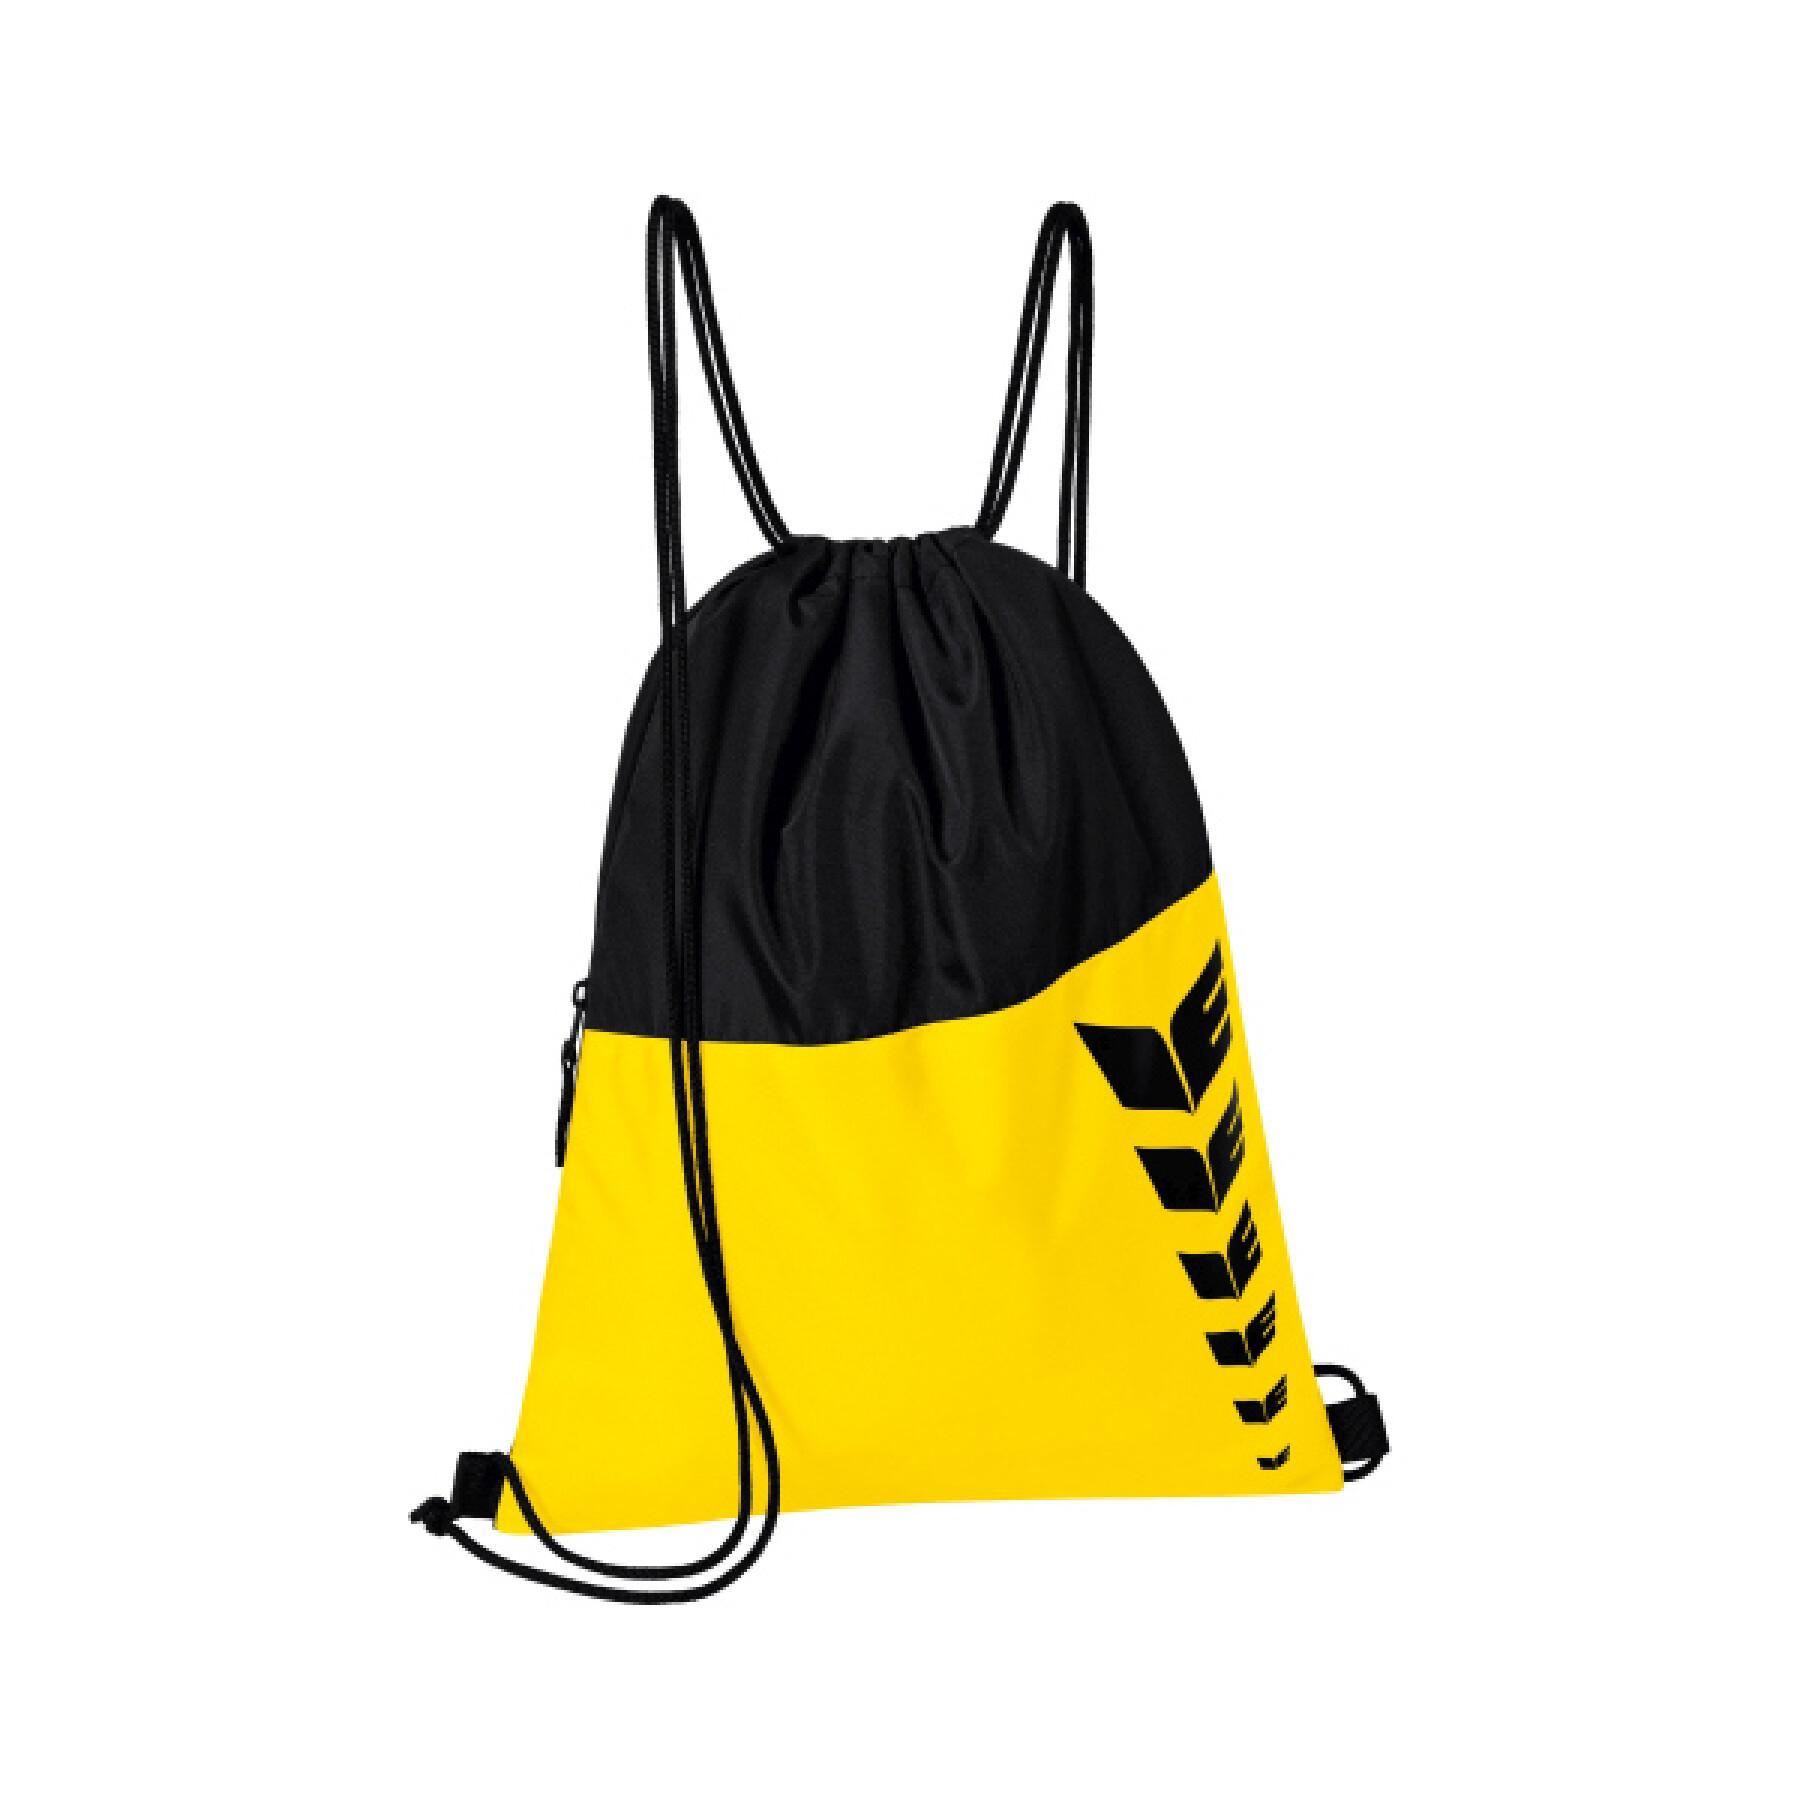 Multifunctional backpack Erima SIX WINGS